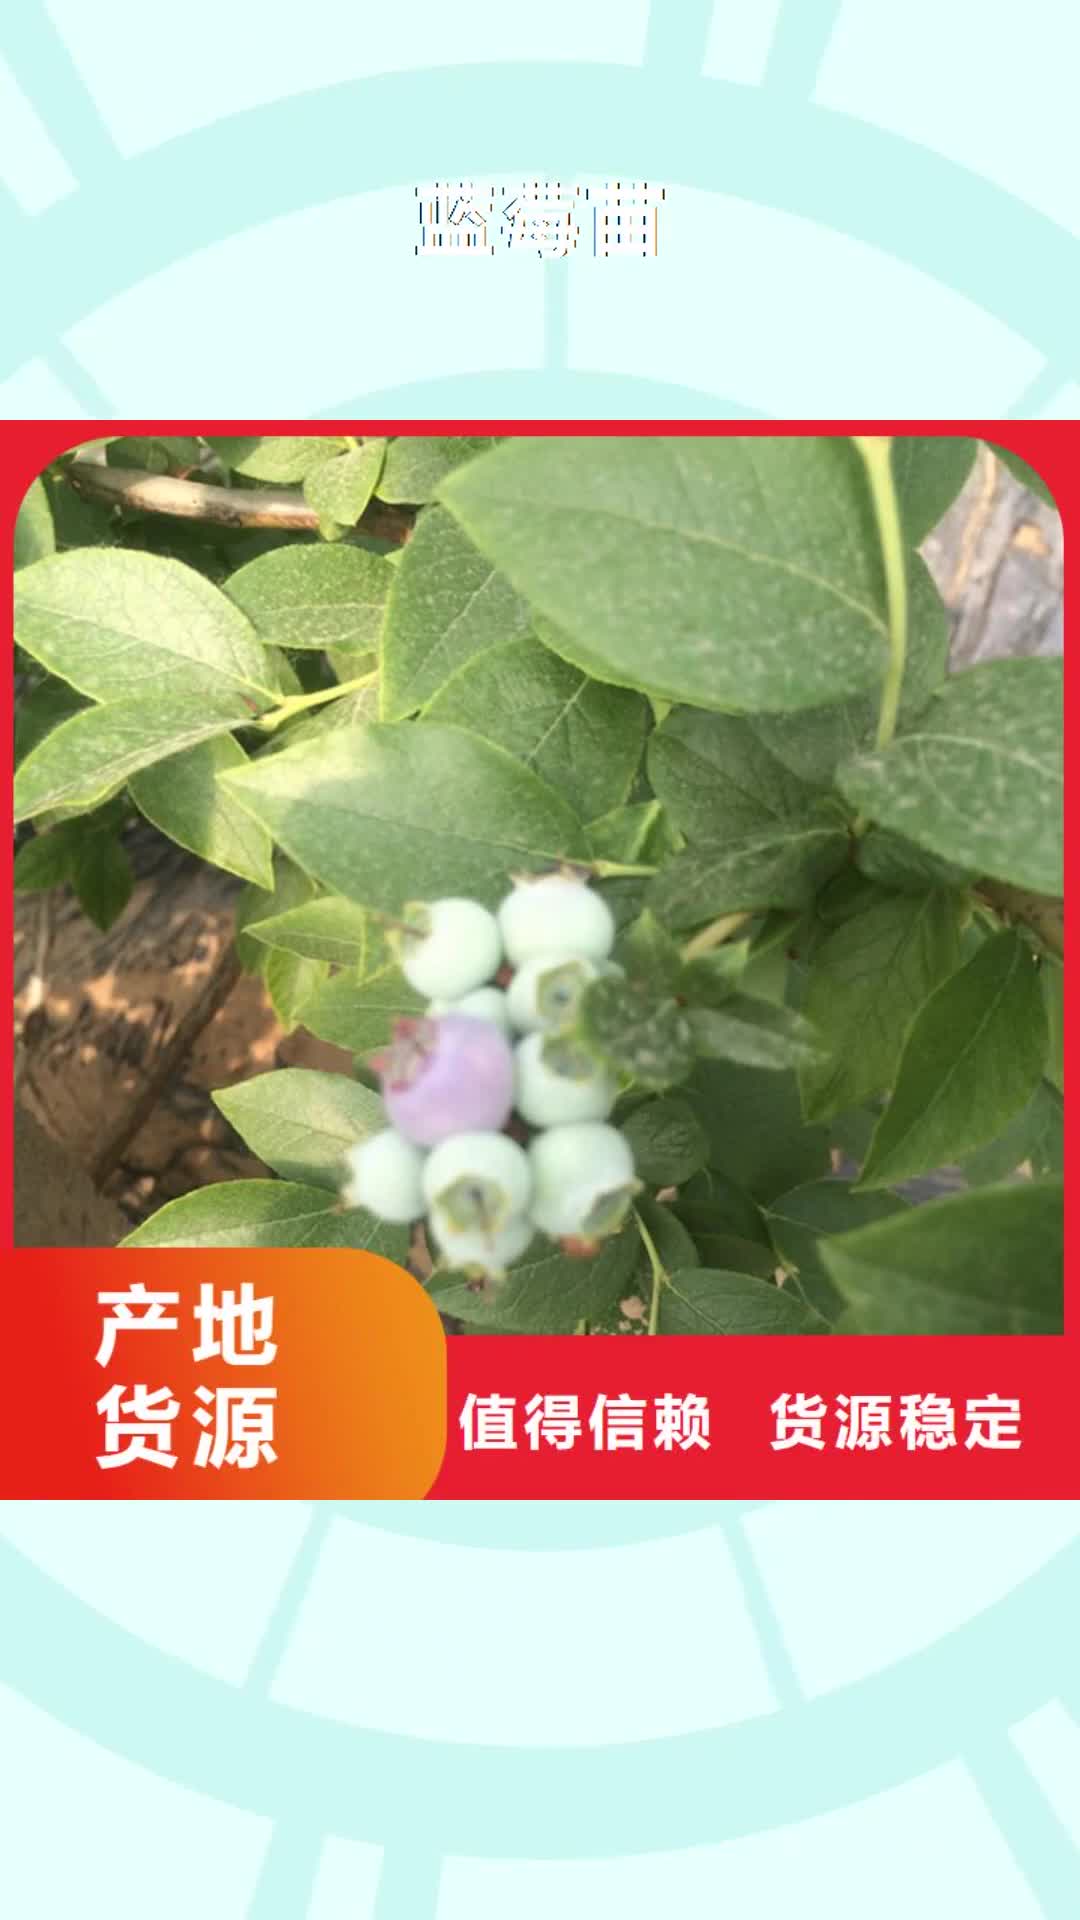 【巢湖 蓝莓苗,桃树苗安心购】